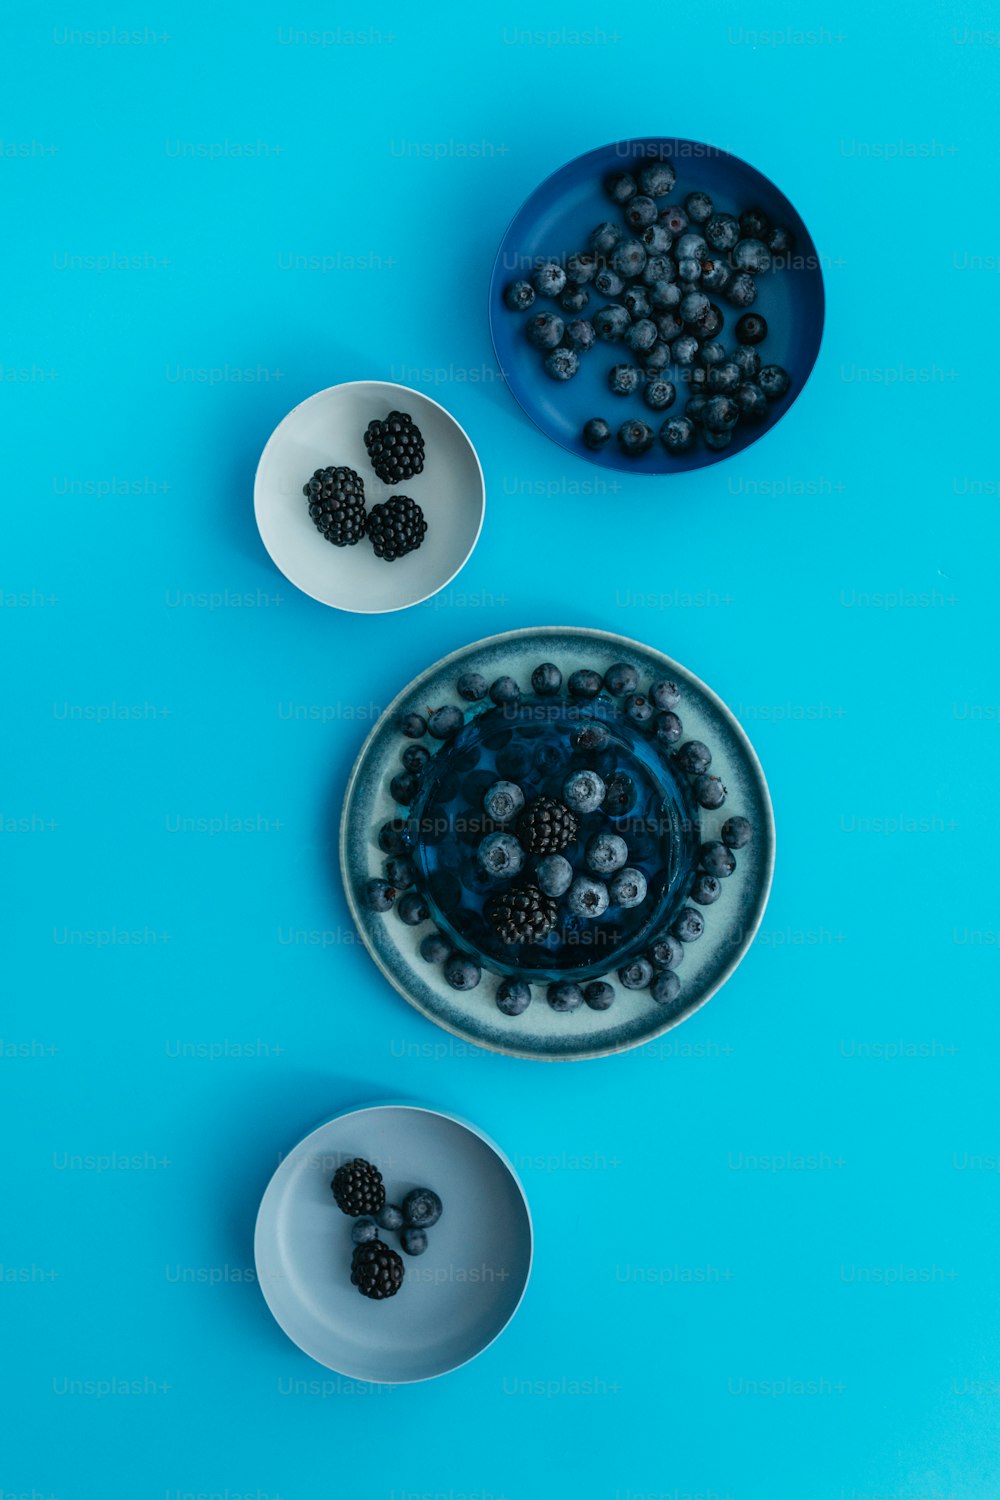 파란색 배경에 딸�기 한 그릇과 블랙베리 한 그릇